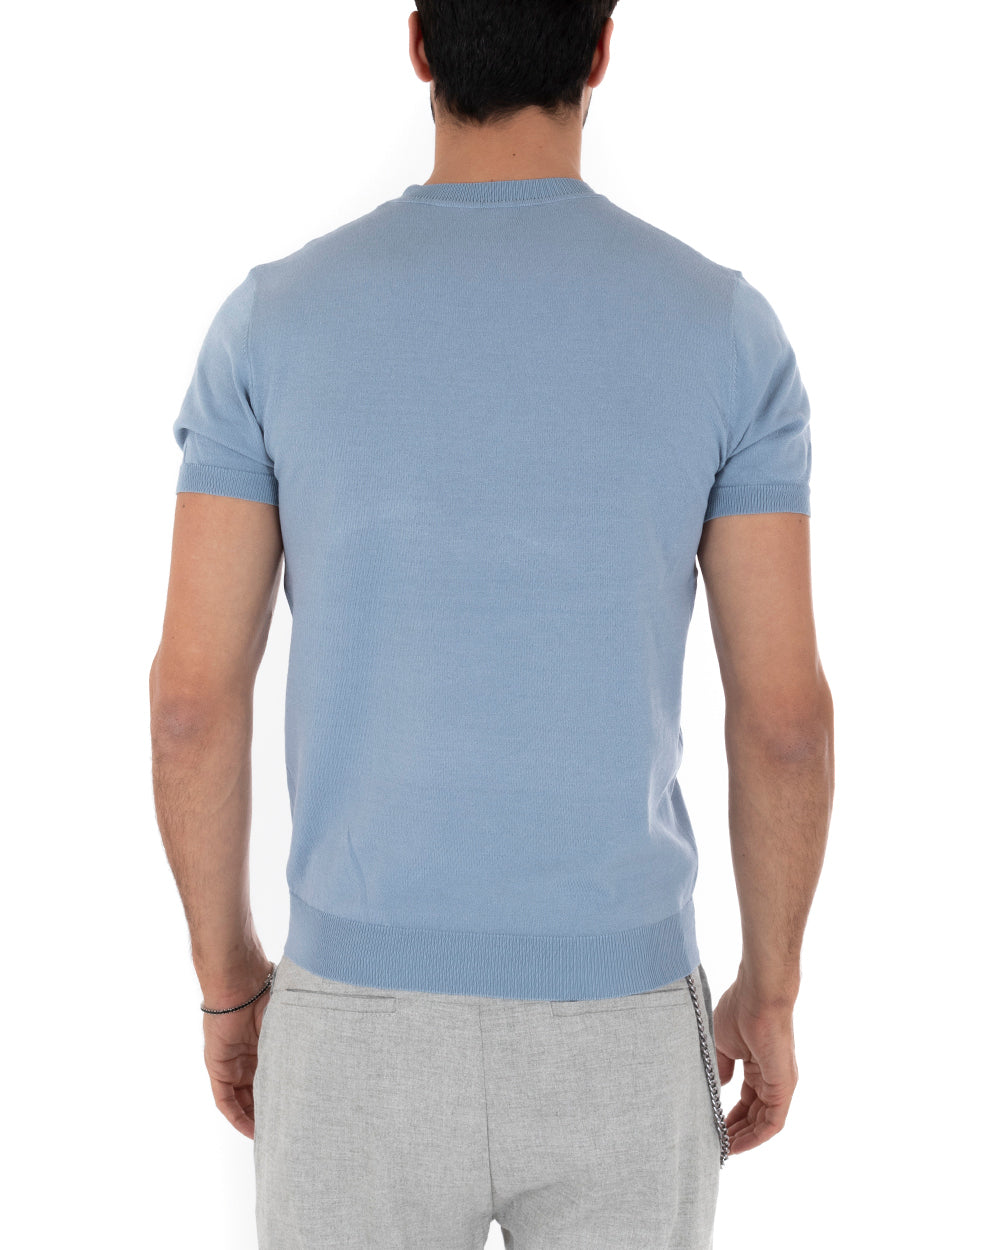 T-Shirt Uomo Manica Corta Tinta Unita Polvere Girocollo Filo Casual GIOSAL-TS3052A